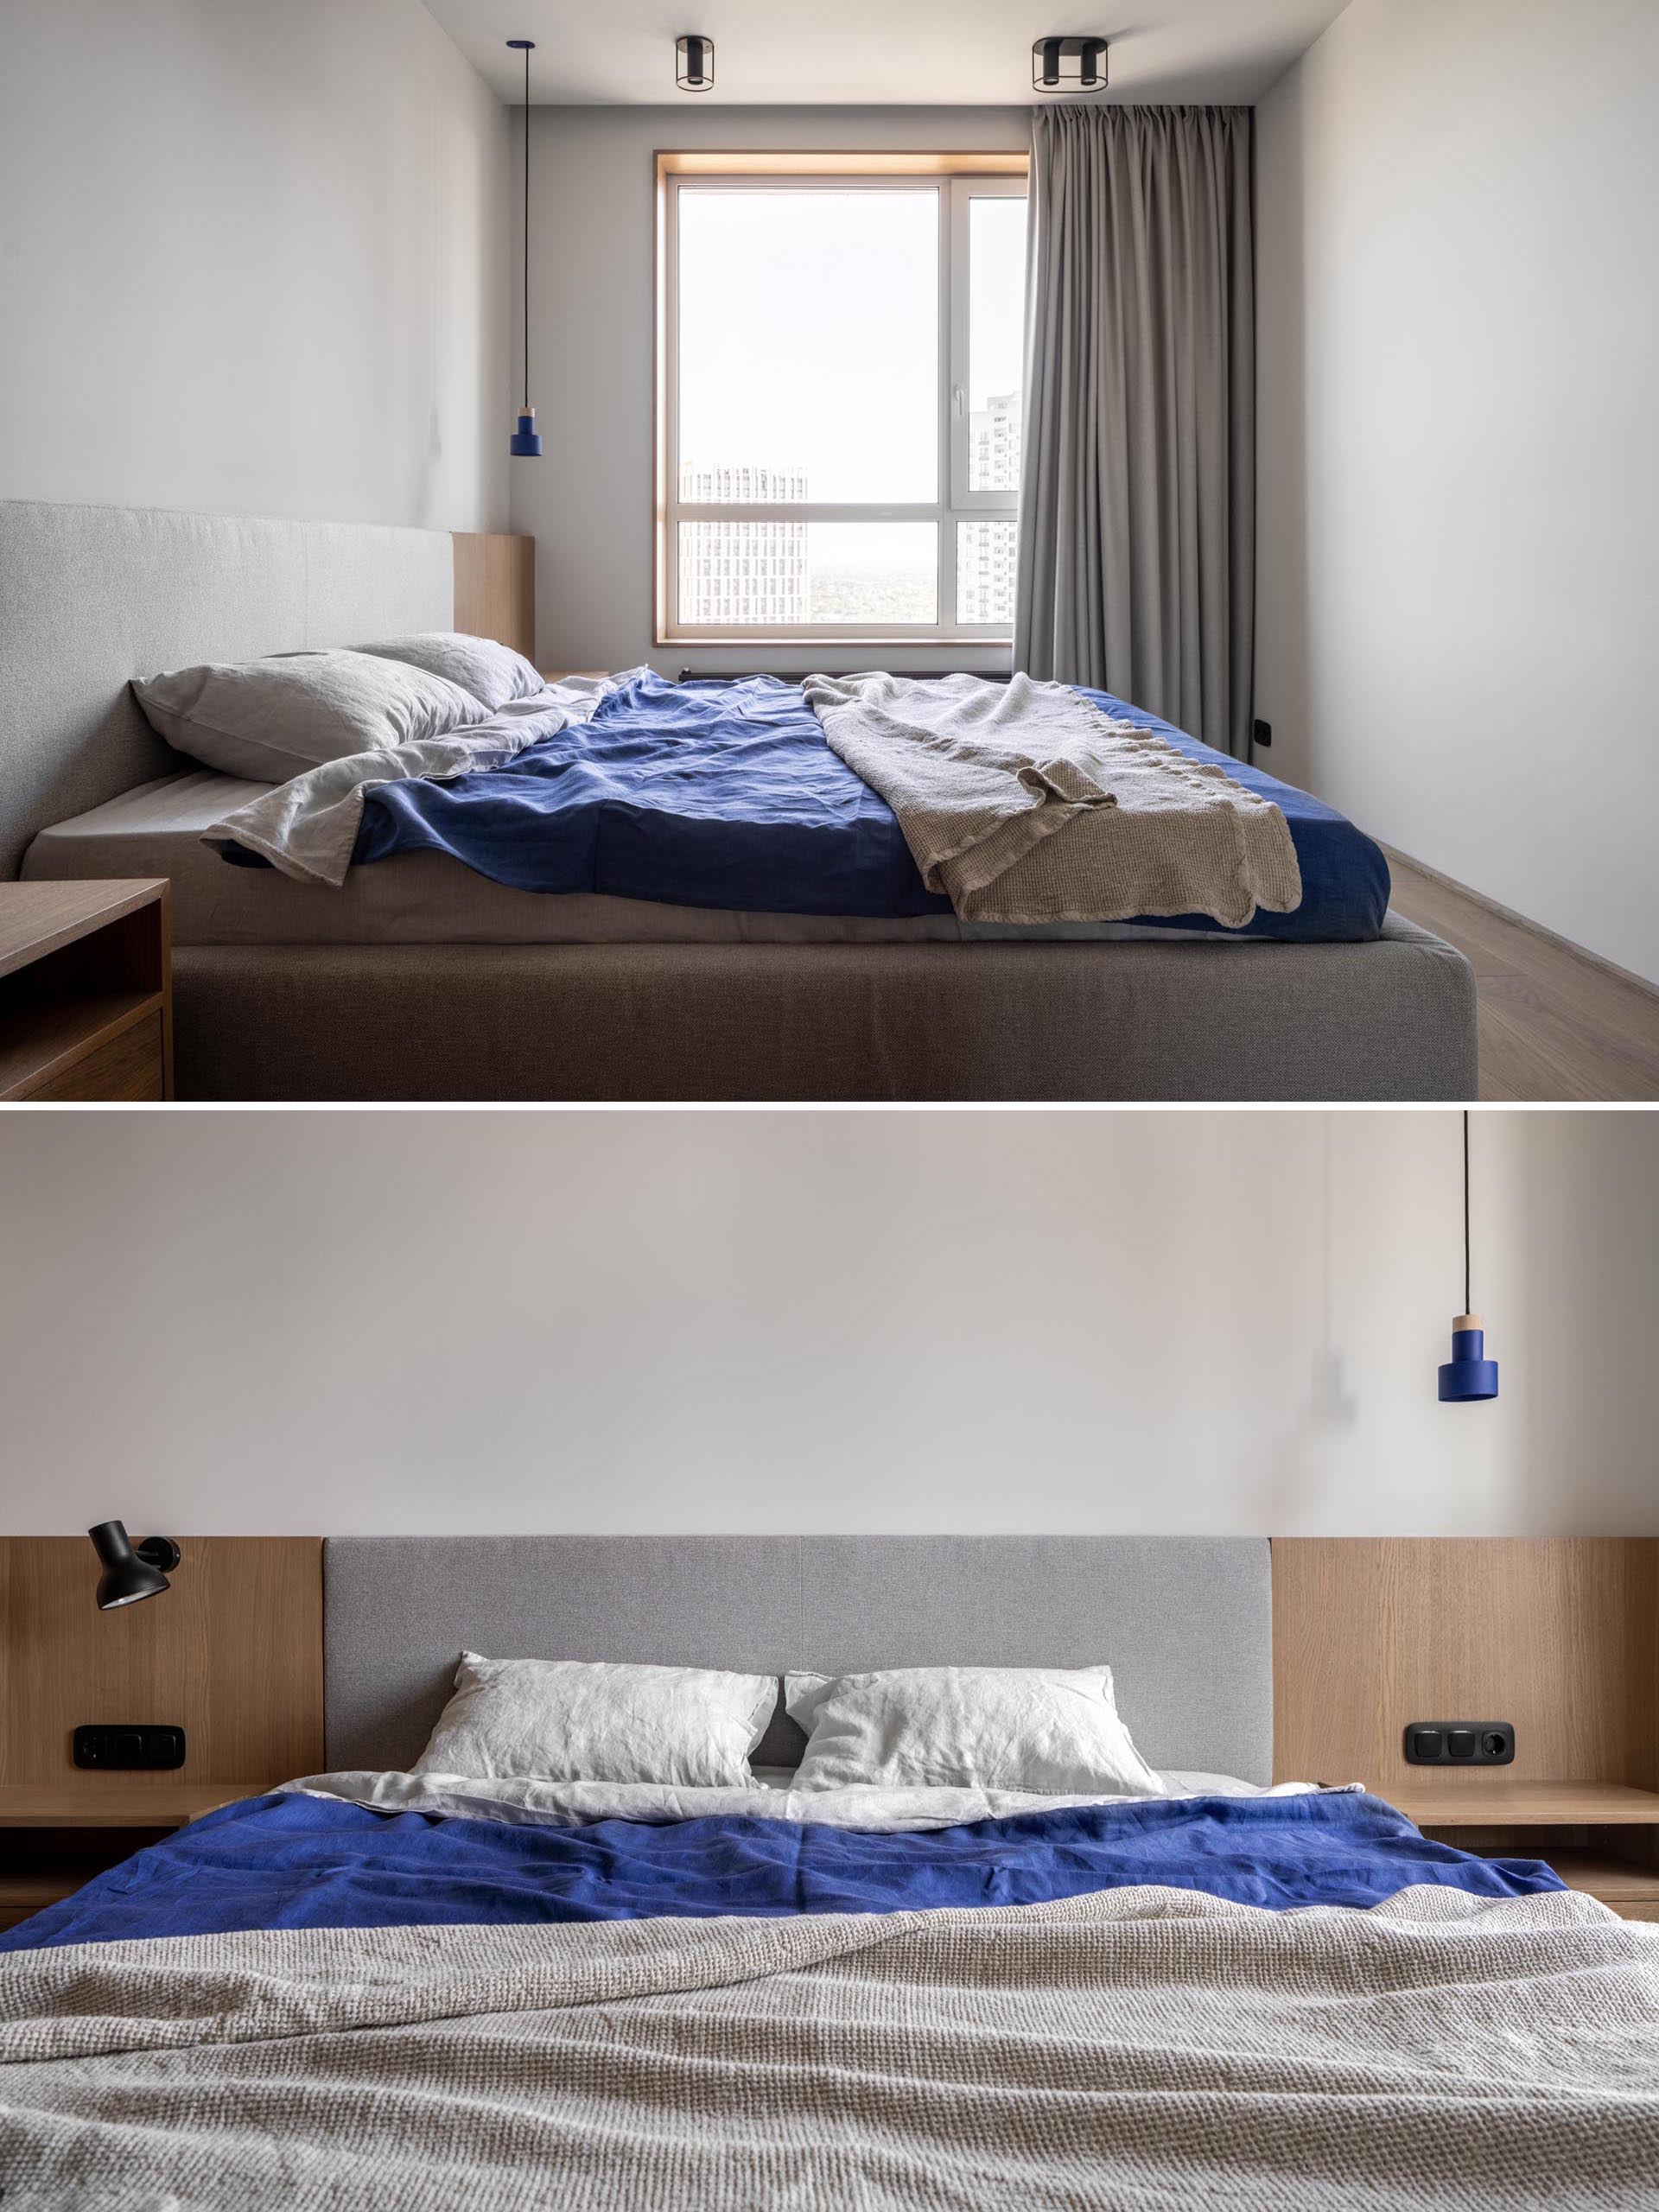 Современная спальня с серым обитым каркасом кровати и деревянными прикроватными тумбочками по бокам, а окна занавешены шторами от пола до потолка.